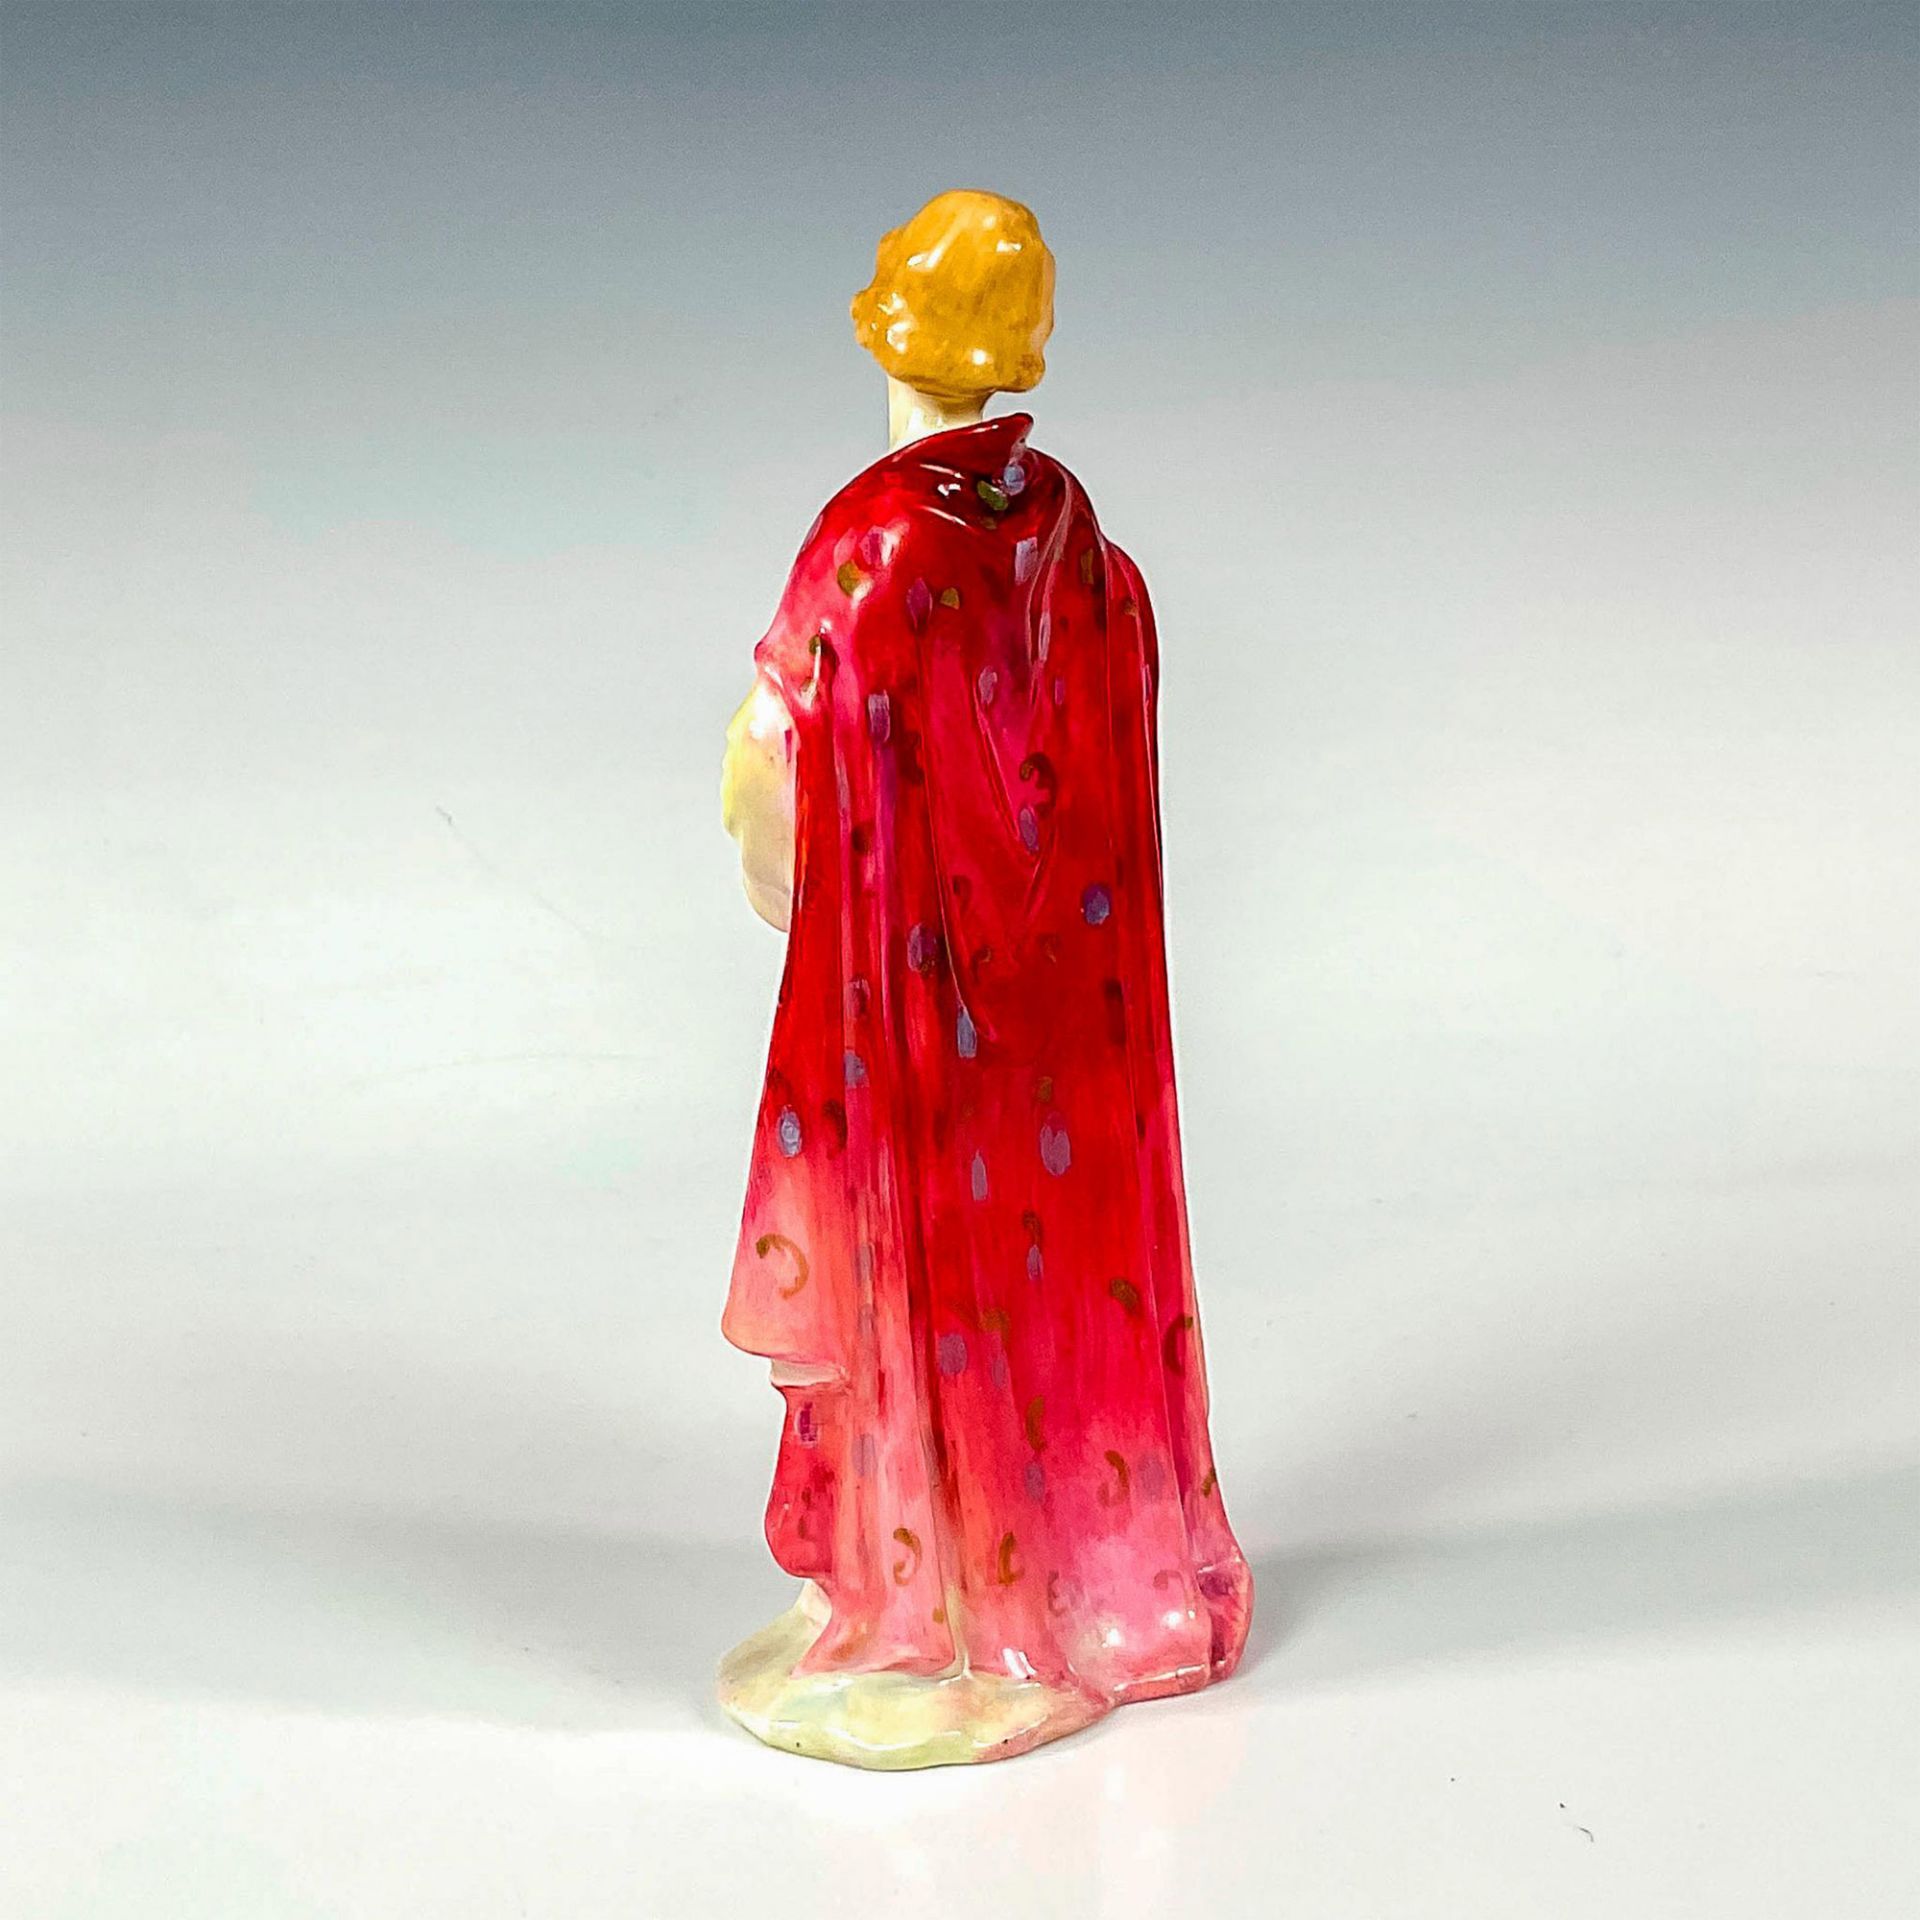 Clothilde HN1598 - Royal Doulton Figurine - Image 2 of 3